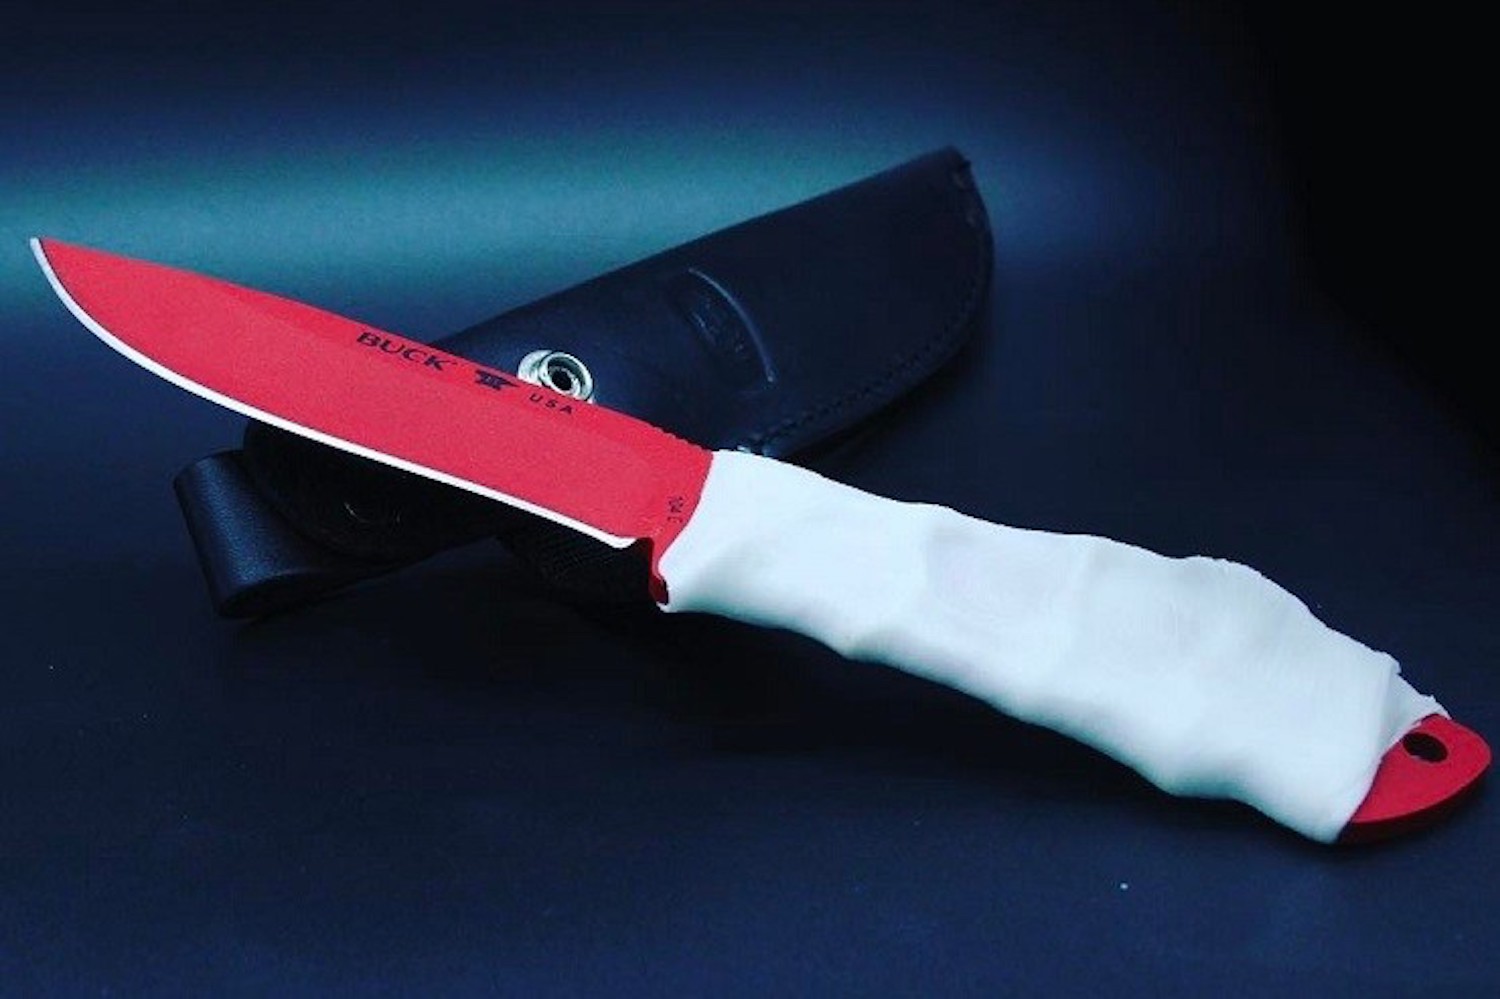 Individueller Griff: Einfach das Band erwärmen, um das Messer wickeln, kräftig zupacken und abkühlen lassen. 